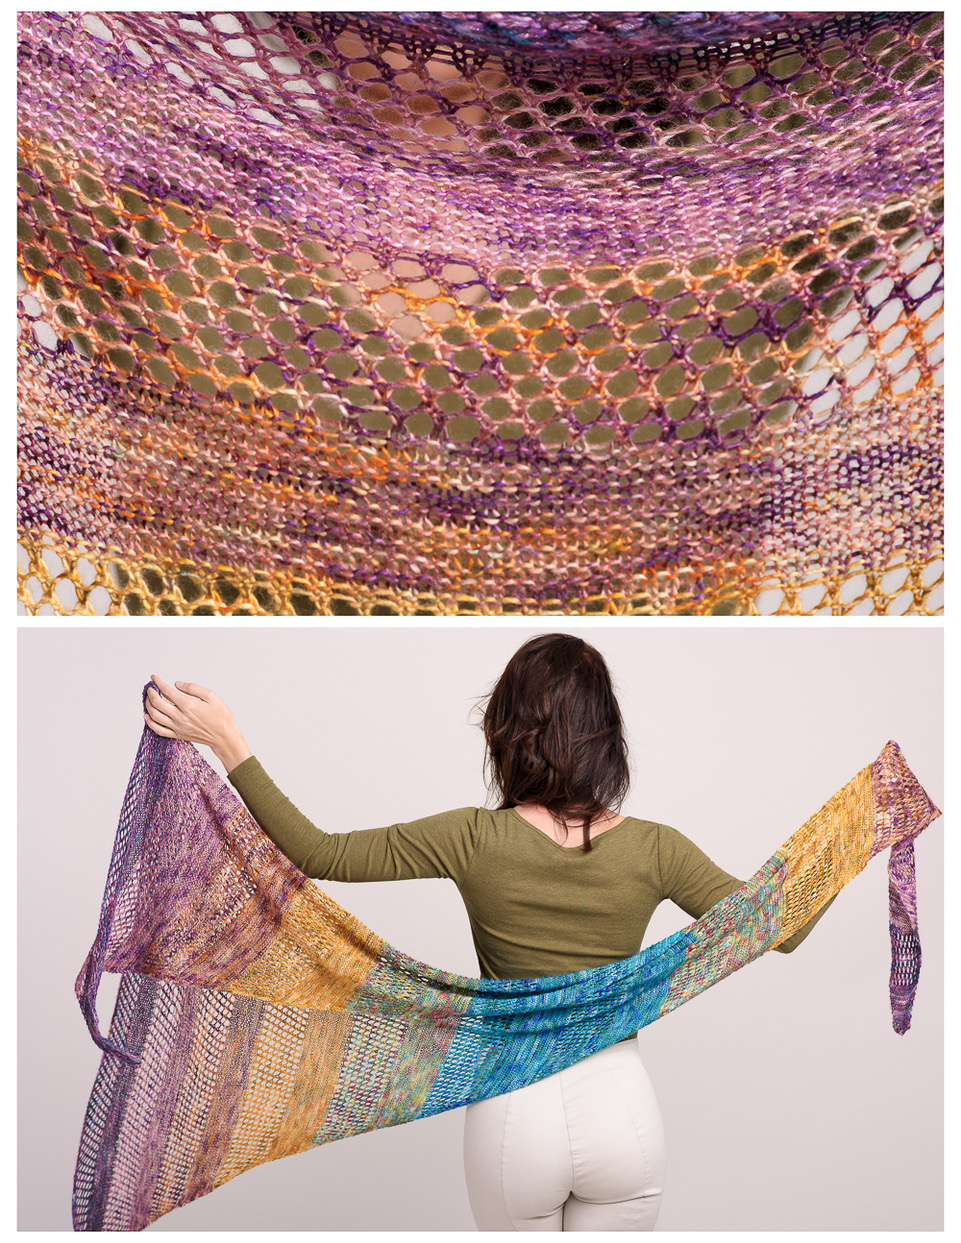 Saiki Knitted Shawl Pattern